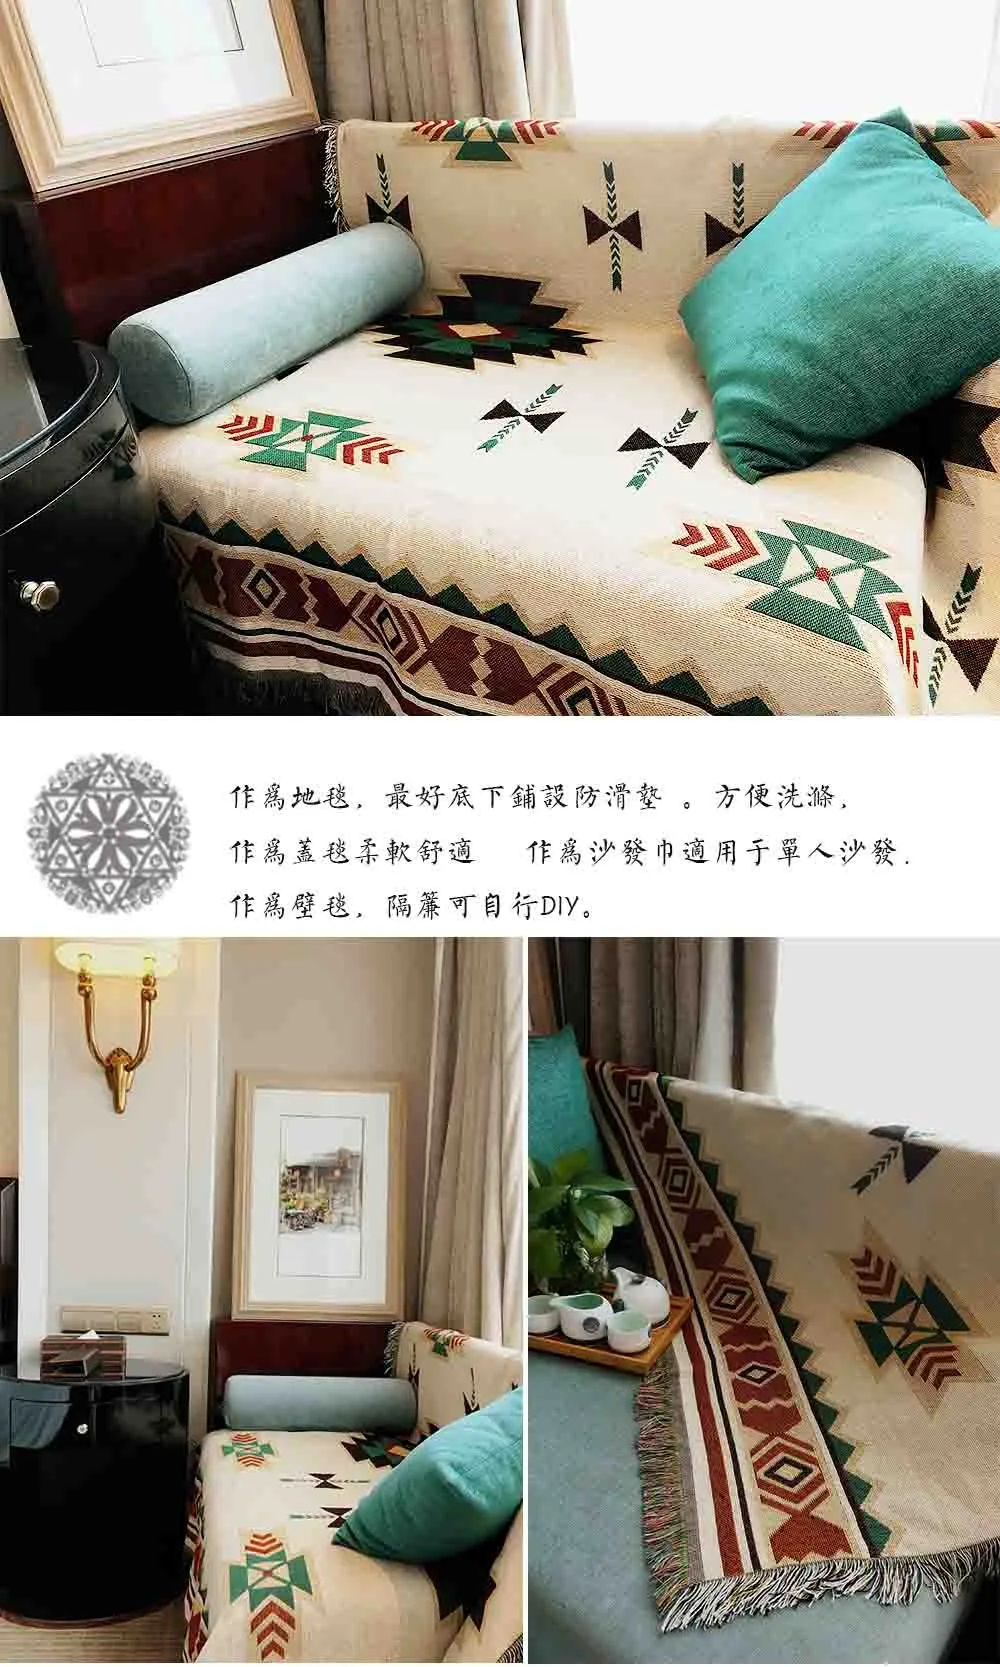 Чистый хлопок белье ретро ностальгия ковер тонкое одеяло Tie-Dye Индийский стиль одеяло покрывало гостиная, спальня Войлок гобелен